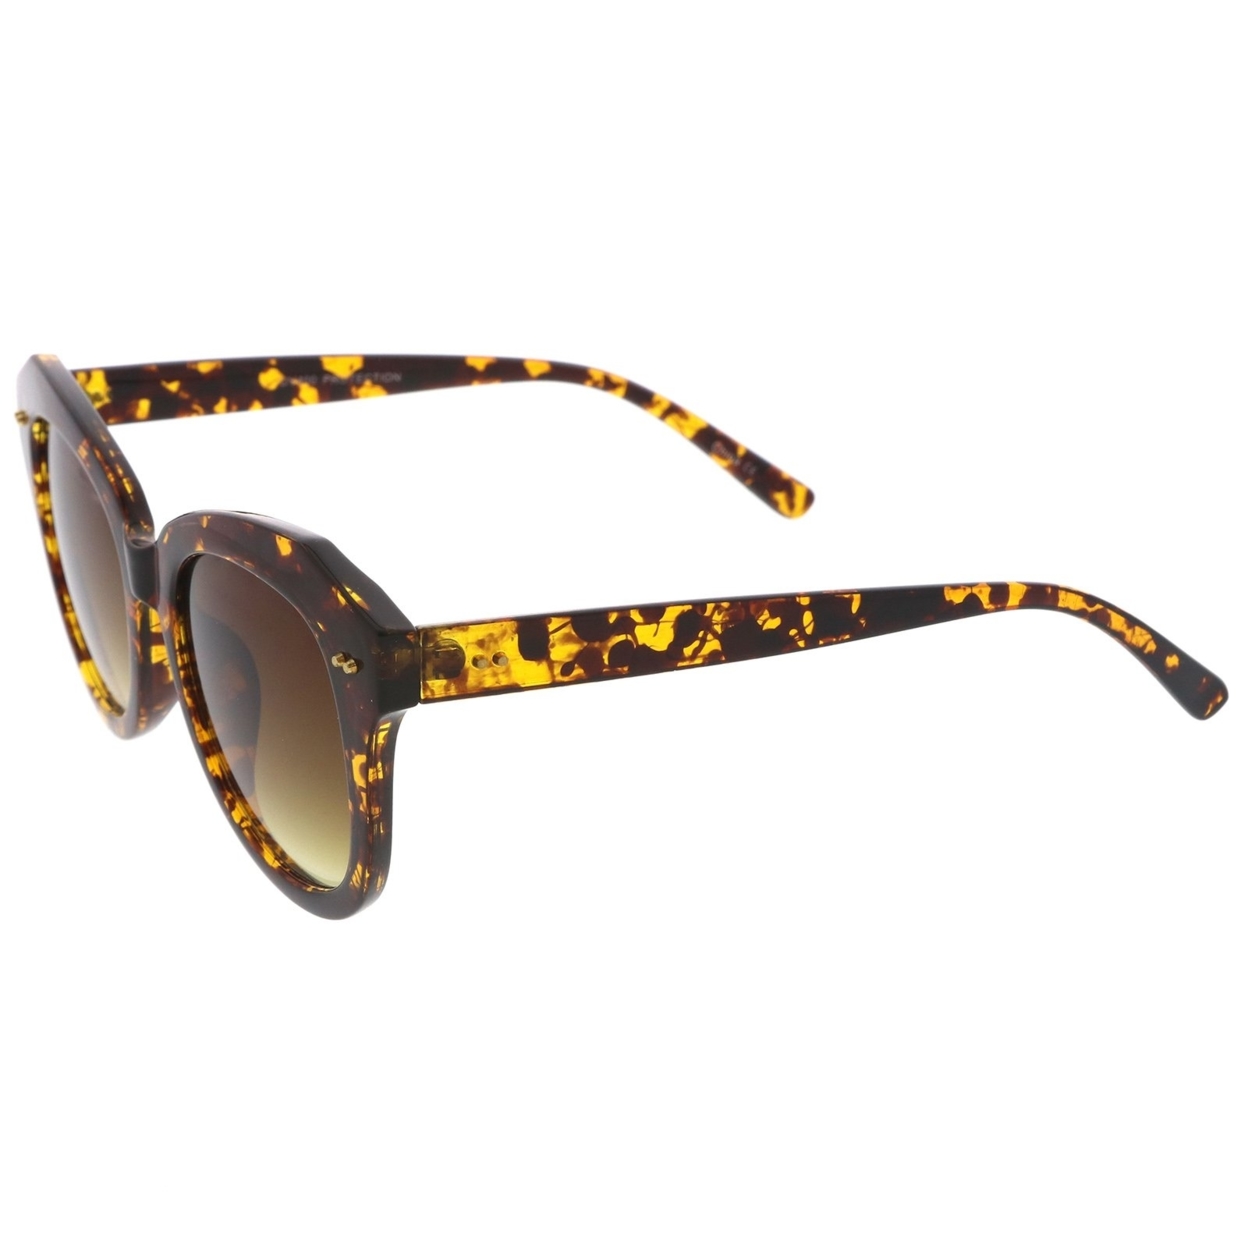 Women's Oversize Horn Rimmed Round Lens Cat Eye Sunglasses 52mm - Black / Lavender